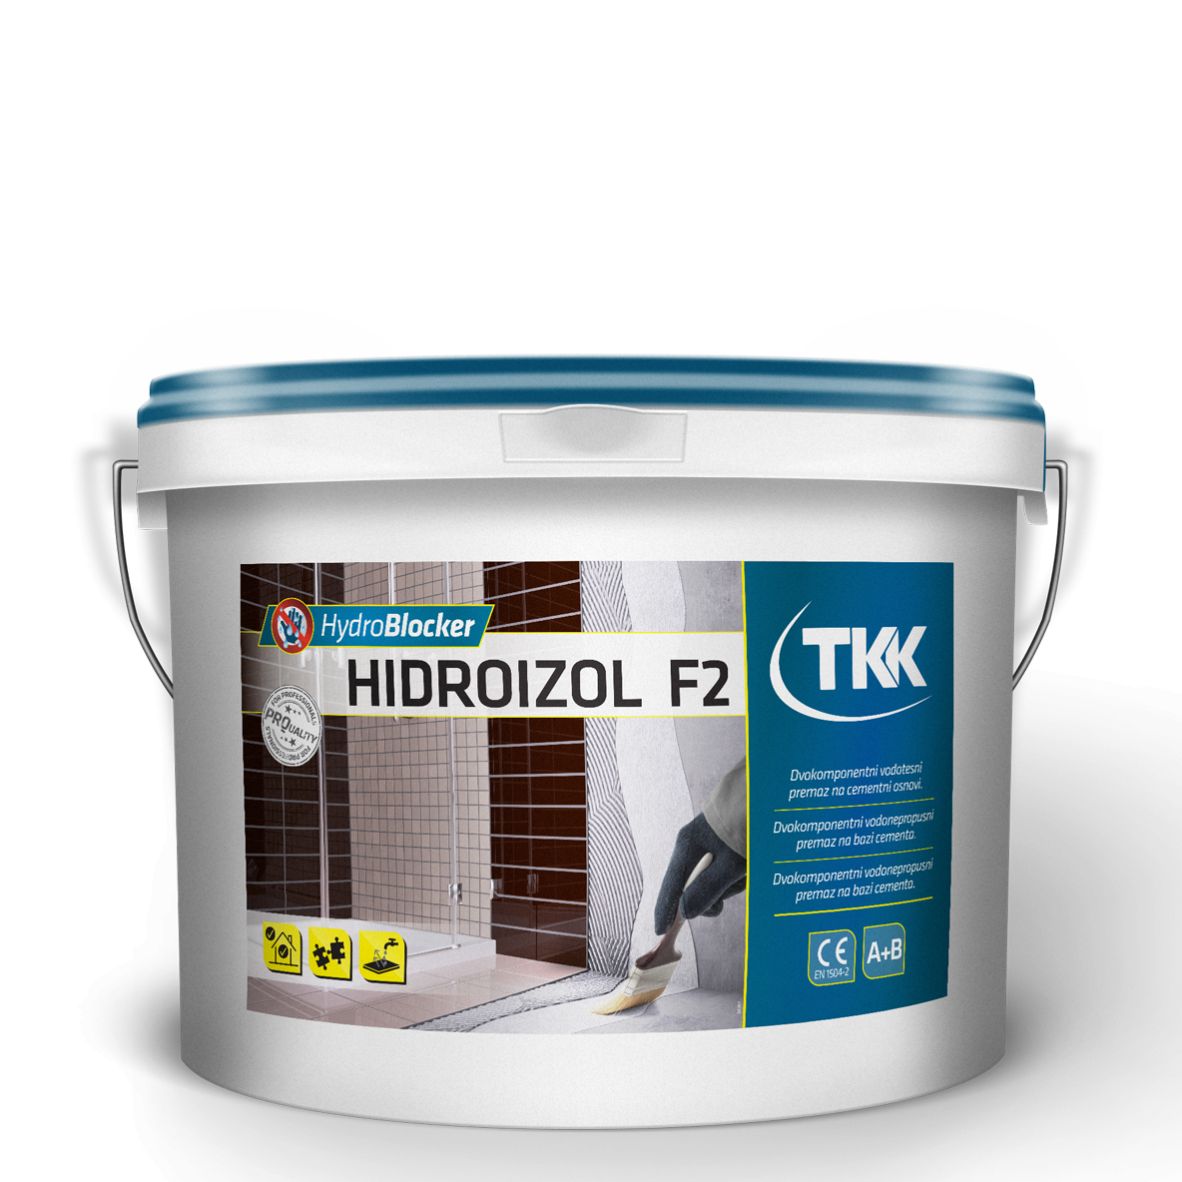 Hydroblocker hidroizol f2